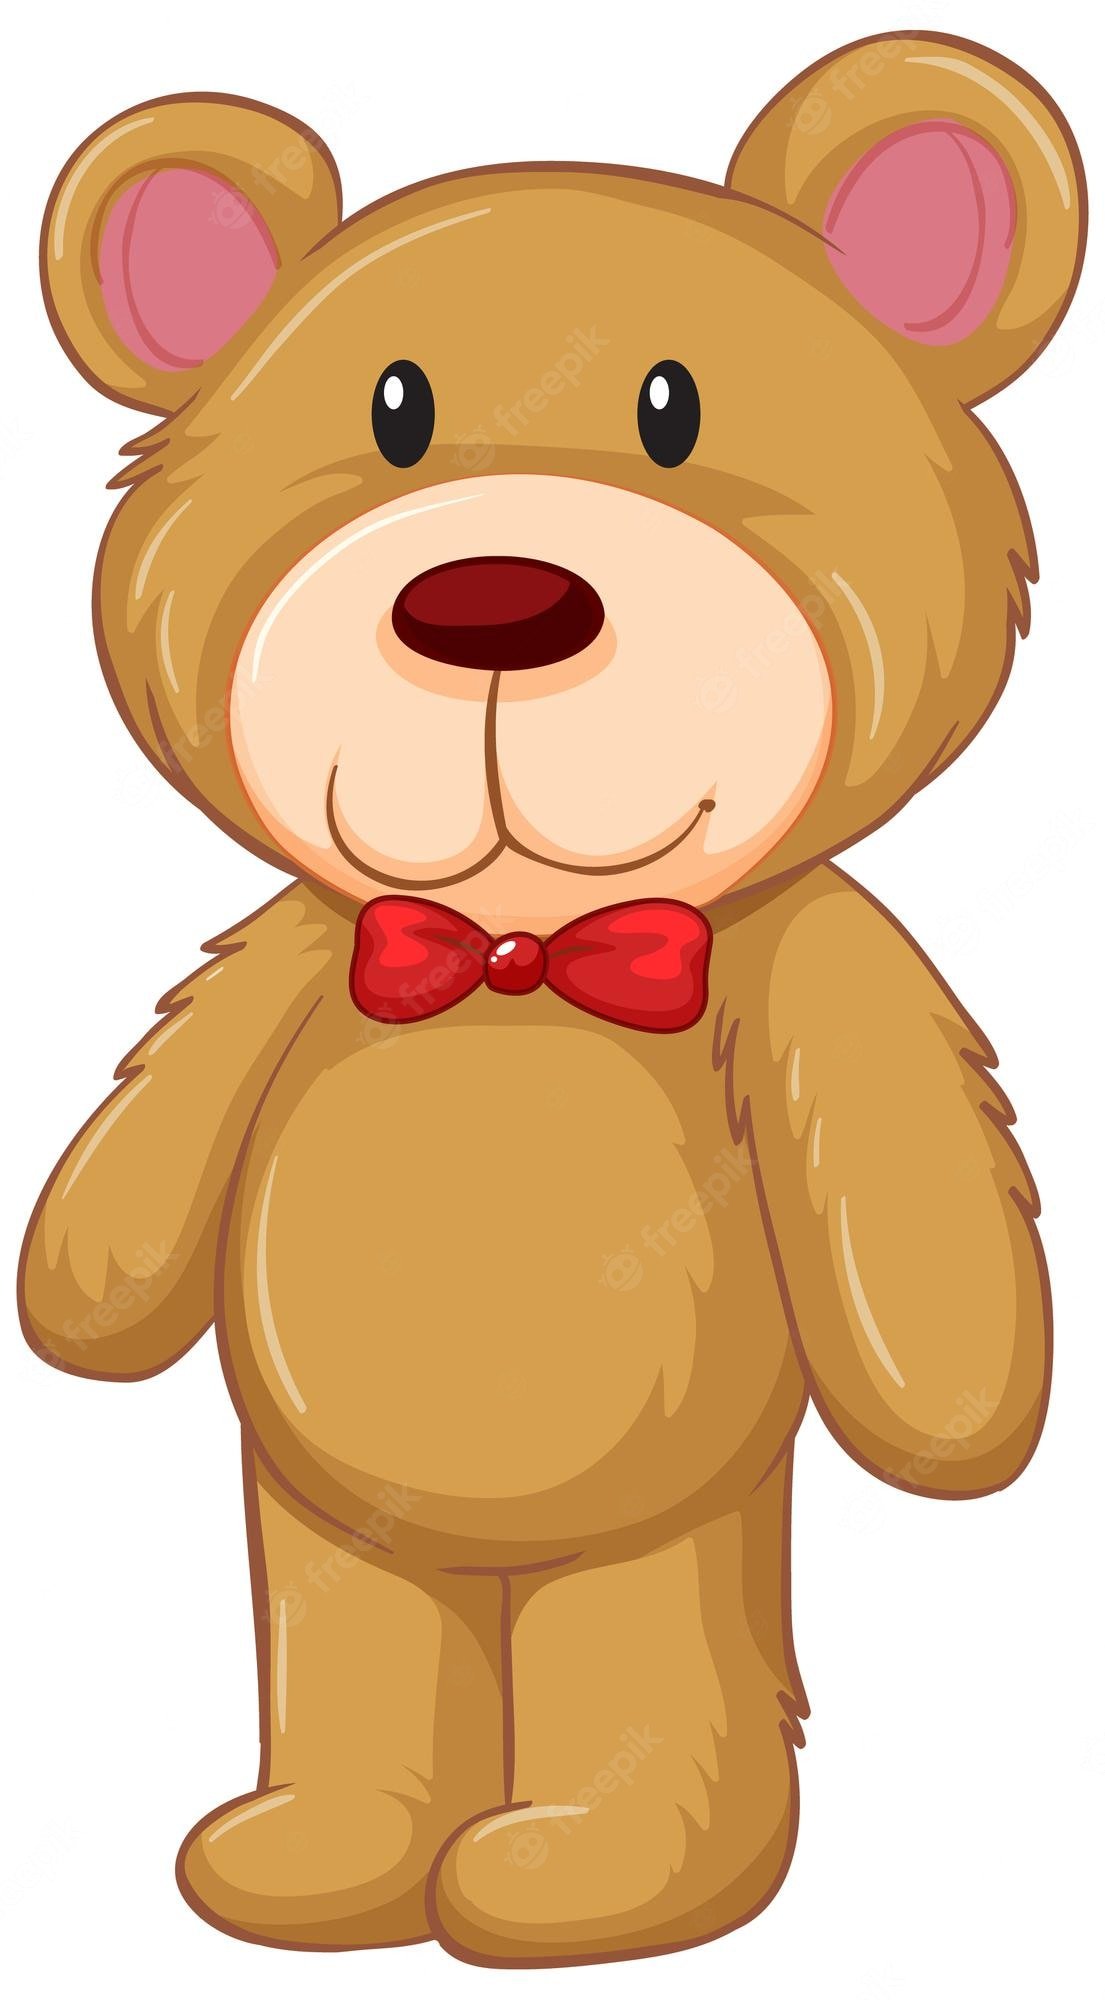 Teddy bear cartoon